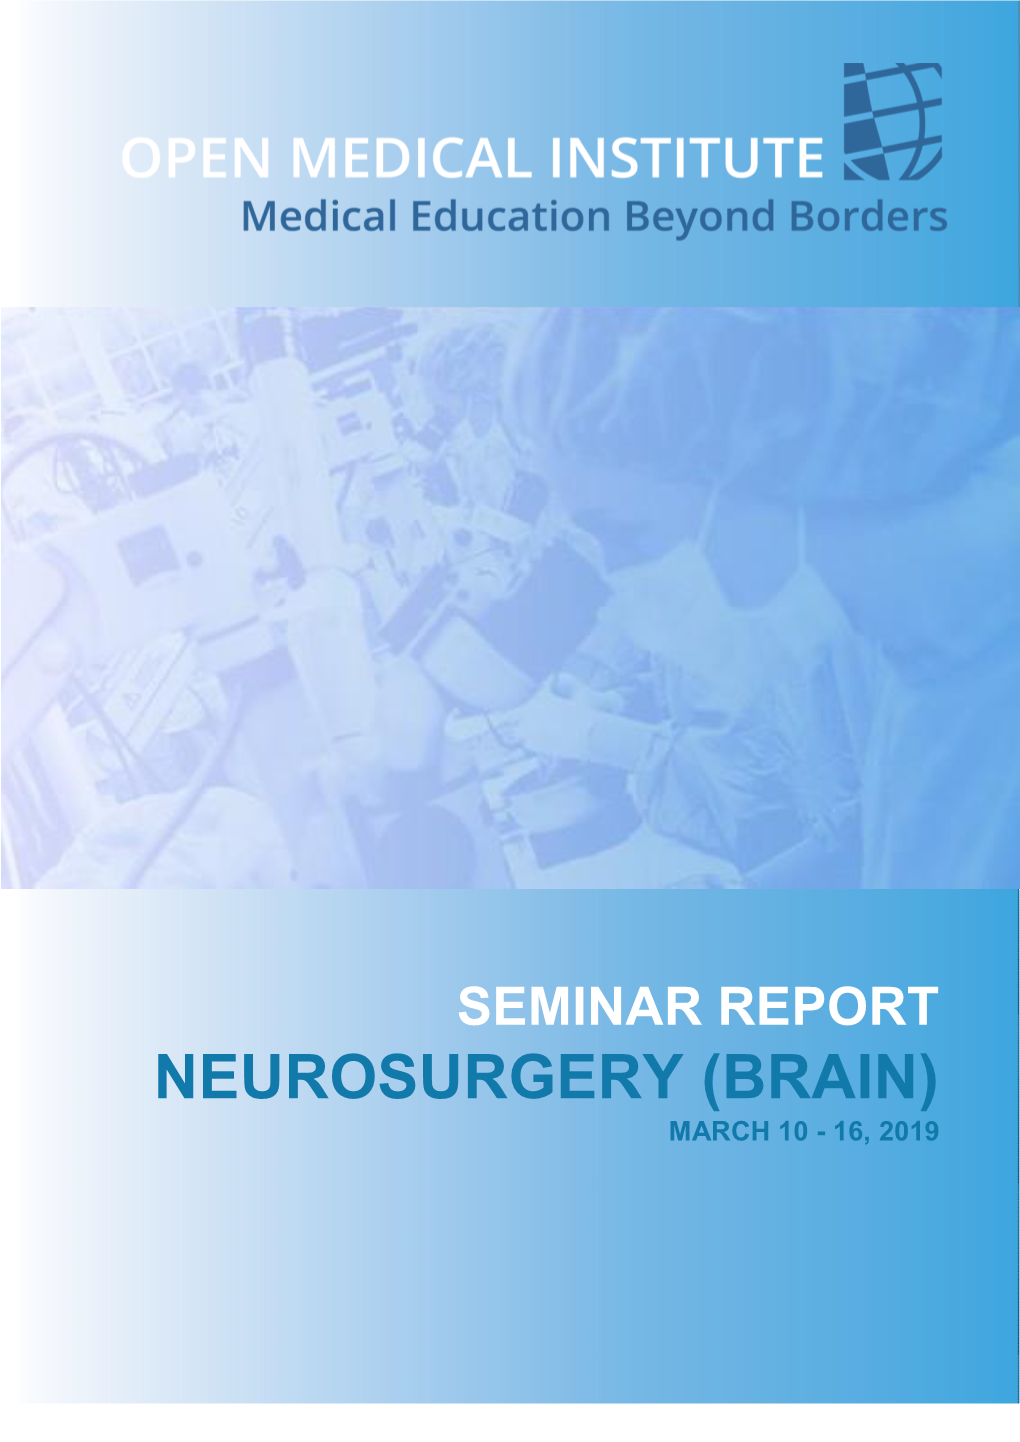 Neurosurgery (Brain) March 10 - 16, 2019